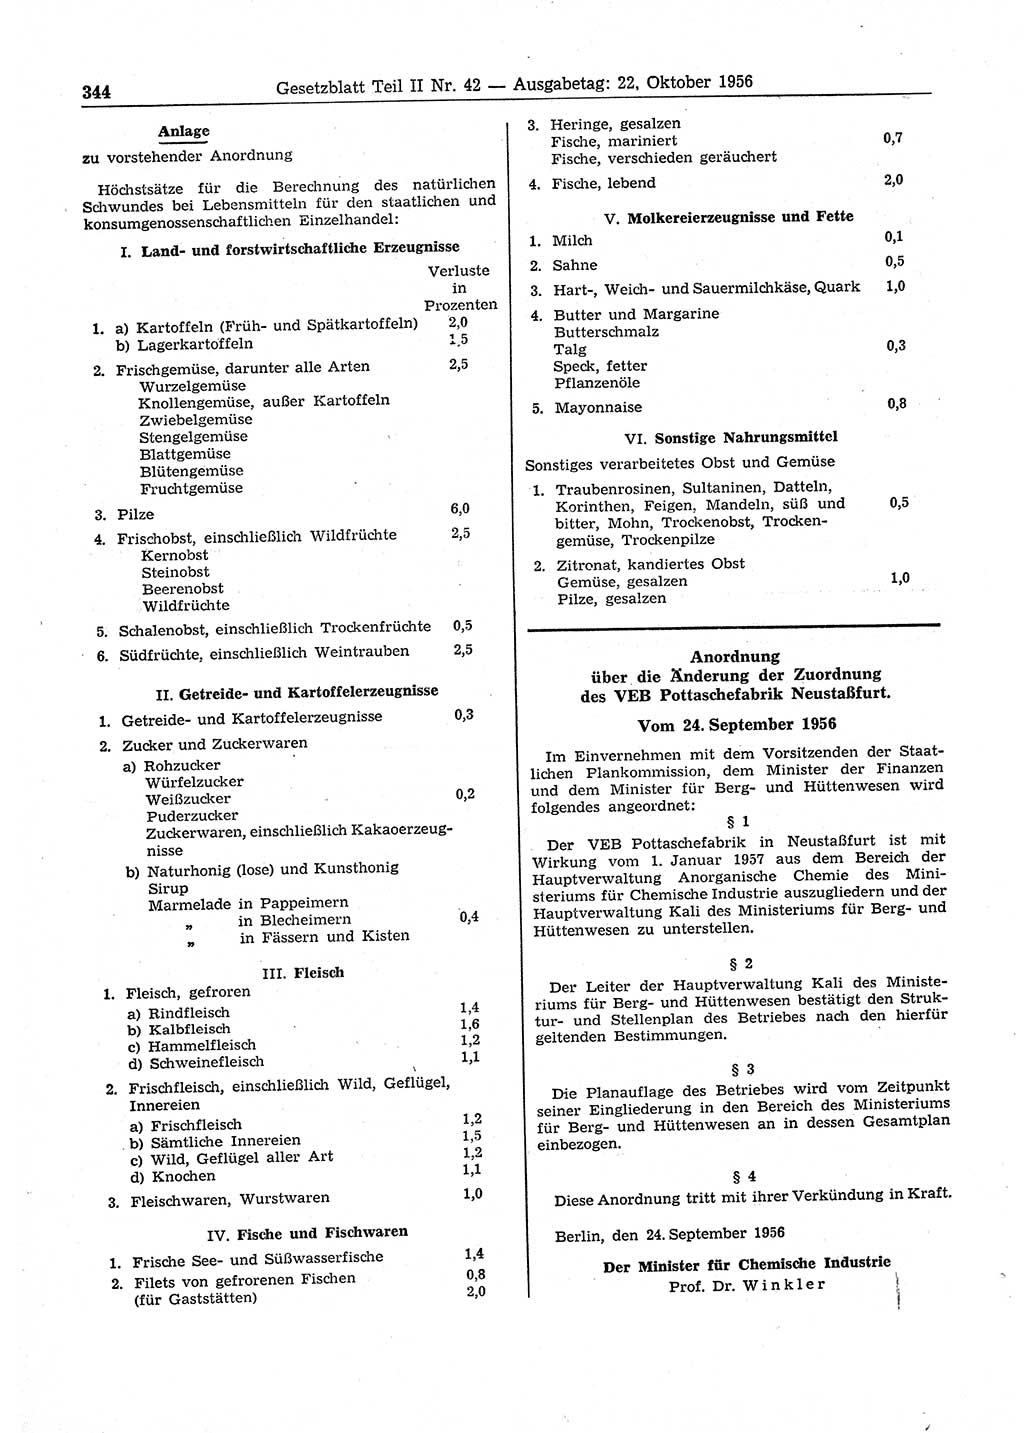 Gesetzblatt (GBl.) der Deutschen Demokratischen Republik (DDR) Teil ⅠⅠ 1956, Seite 344 (GBl. DDR ⅠⅠ 1956, S. 344)